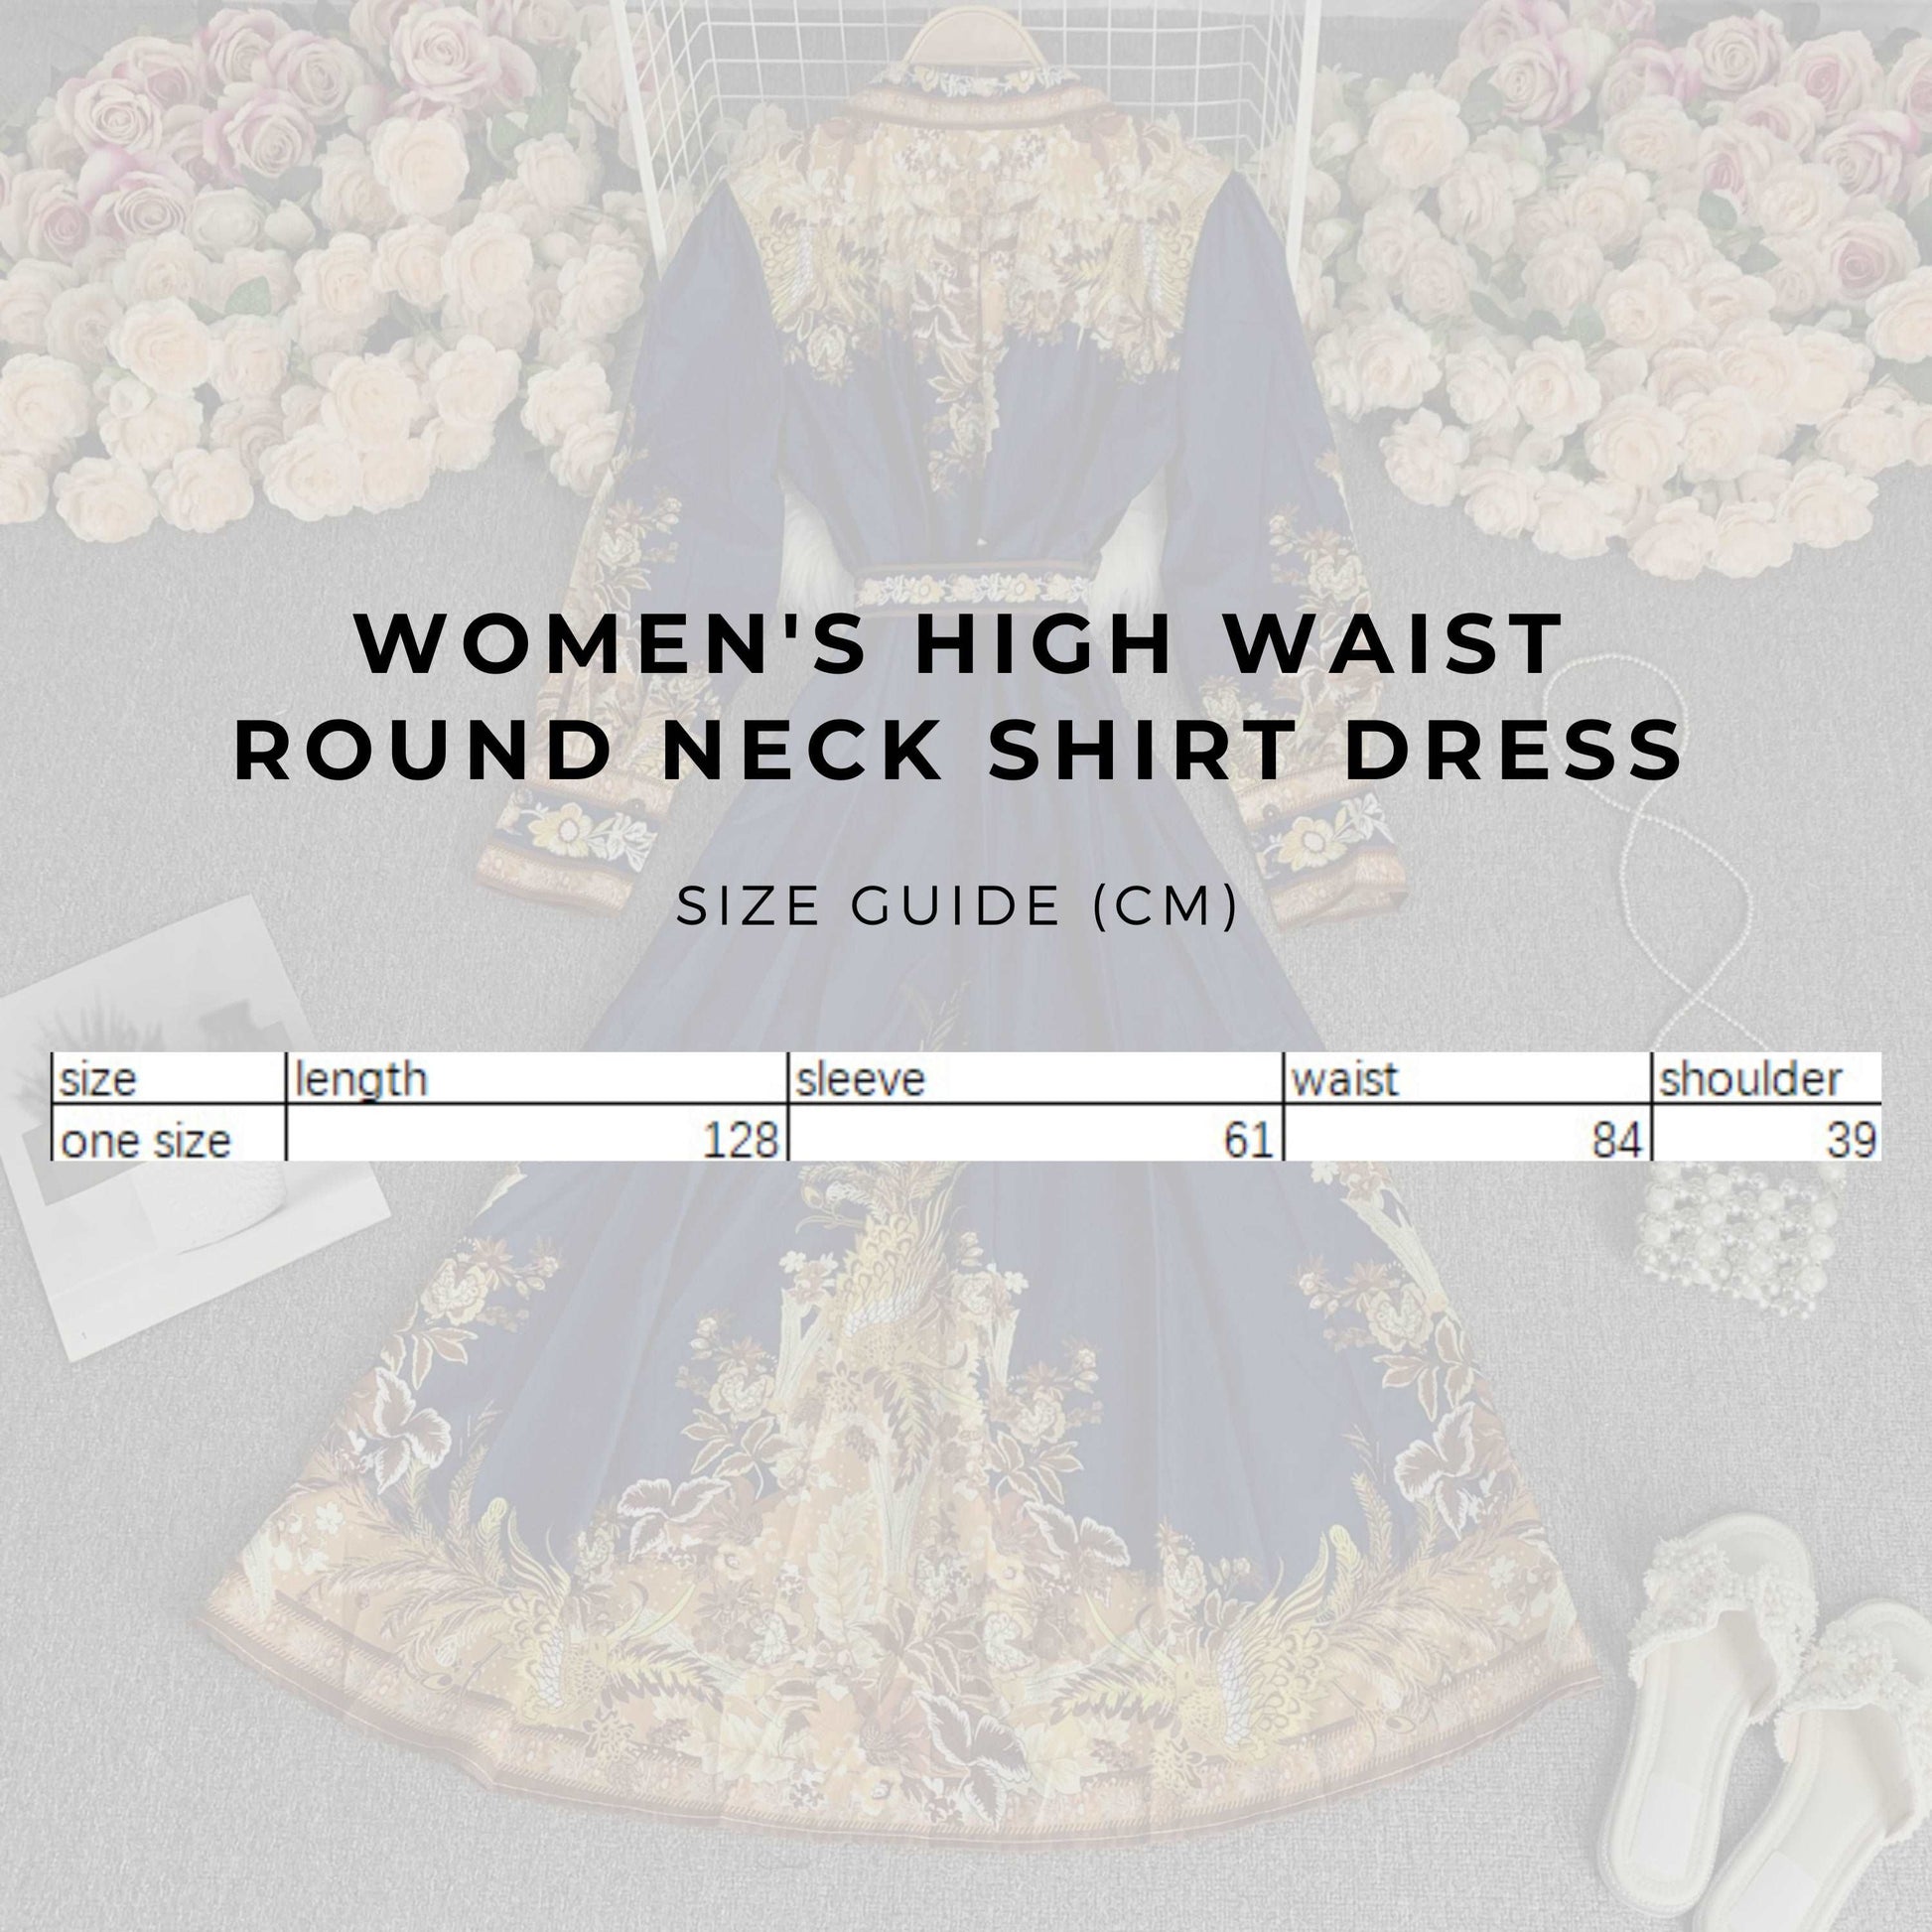 Women's High Waist Round Neck Shirt Dress